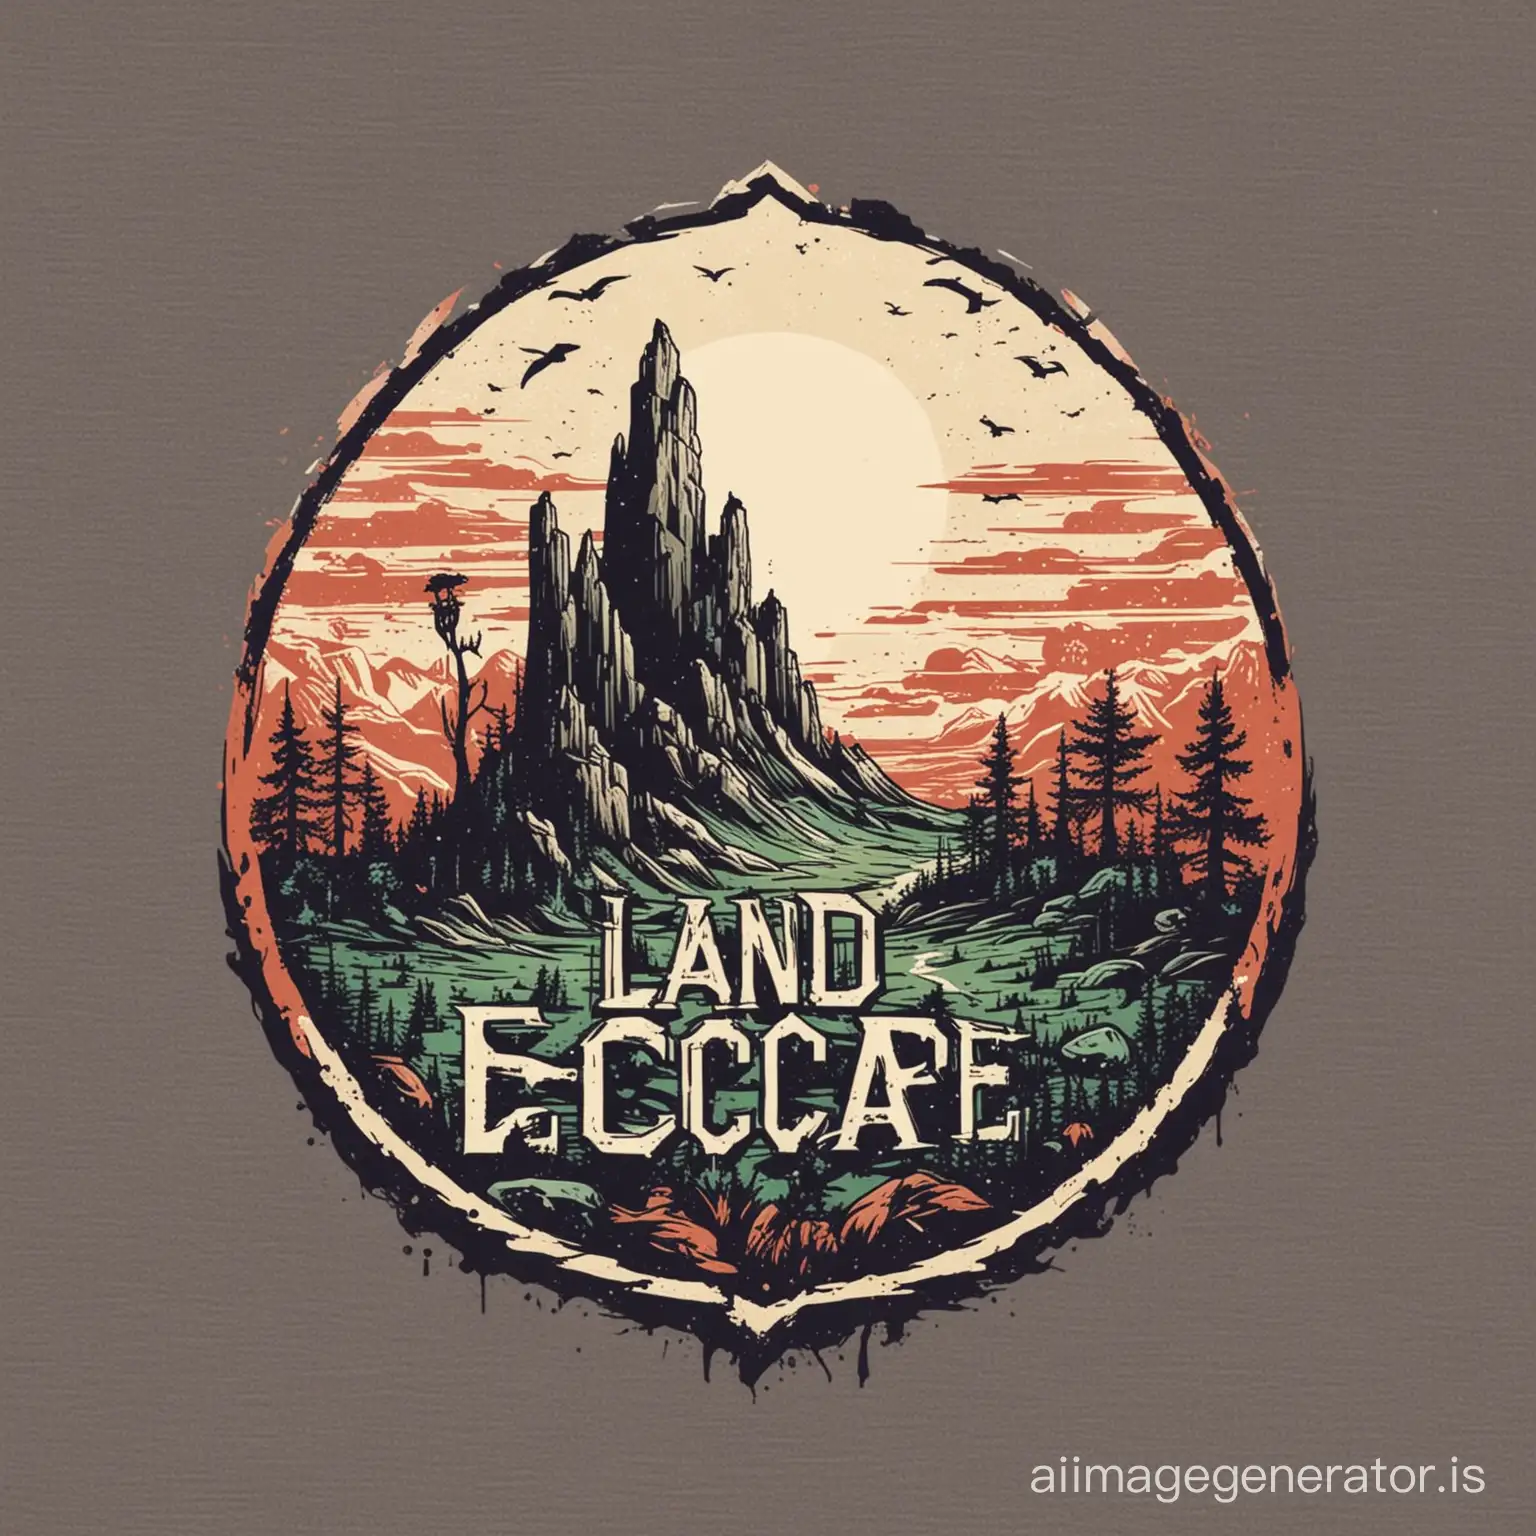 land escape logo for t shirt